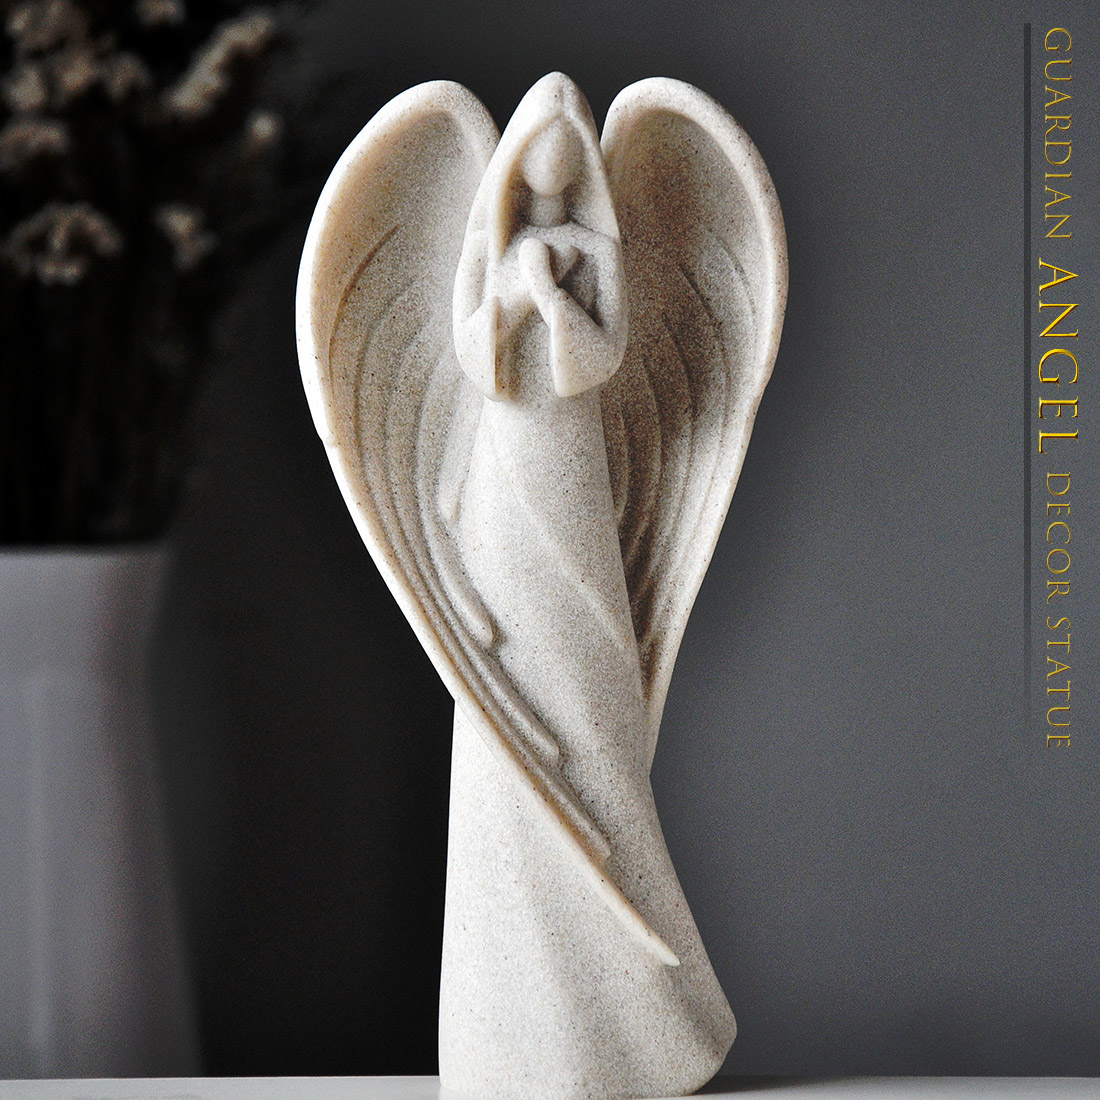 守护天使装饰摆件客厅书房创意人物雕像工艺品欧式复古家居饰品